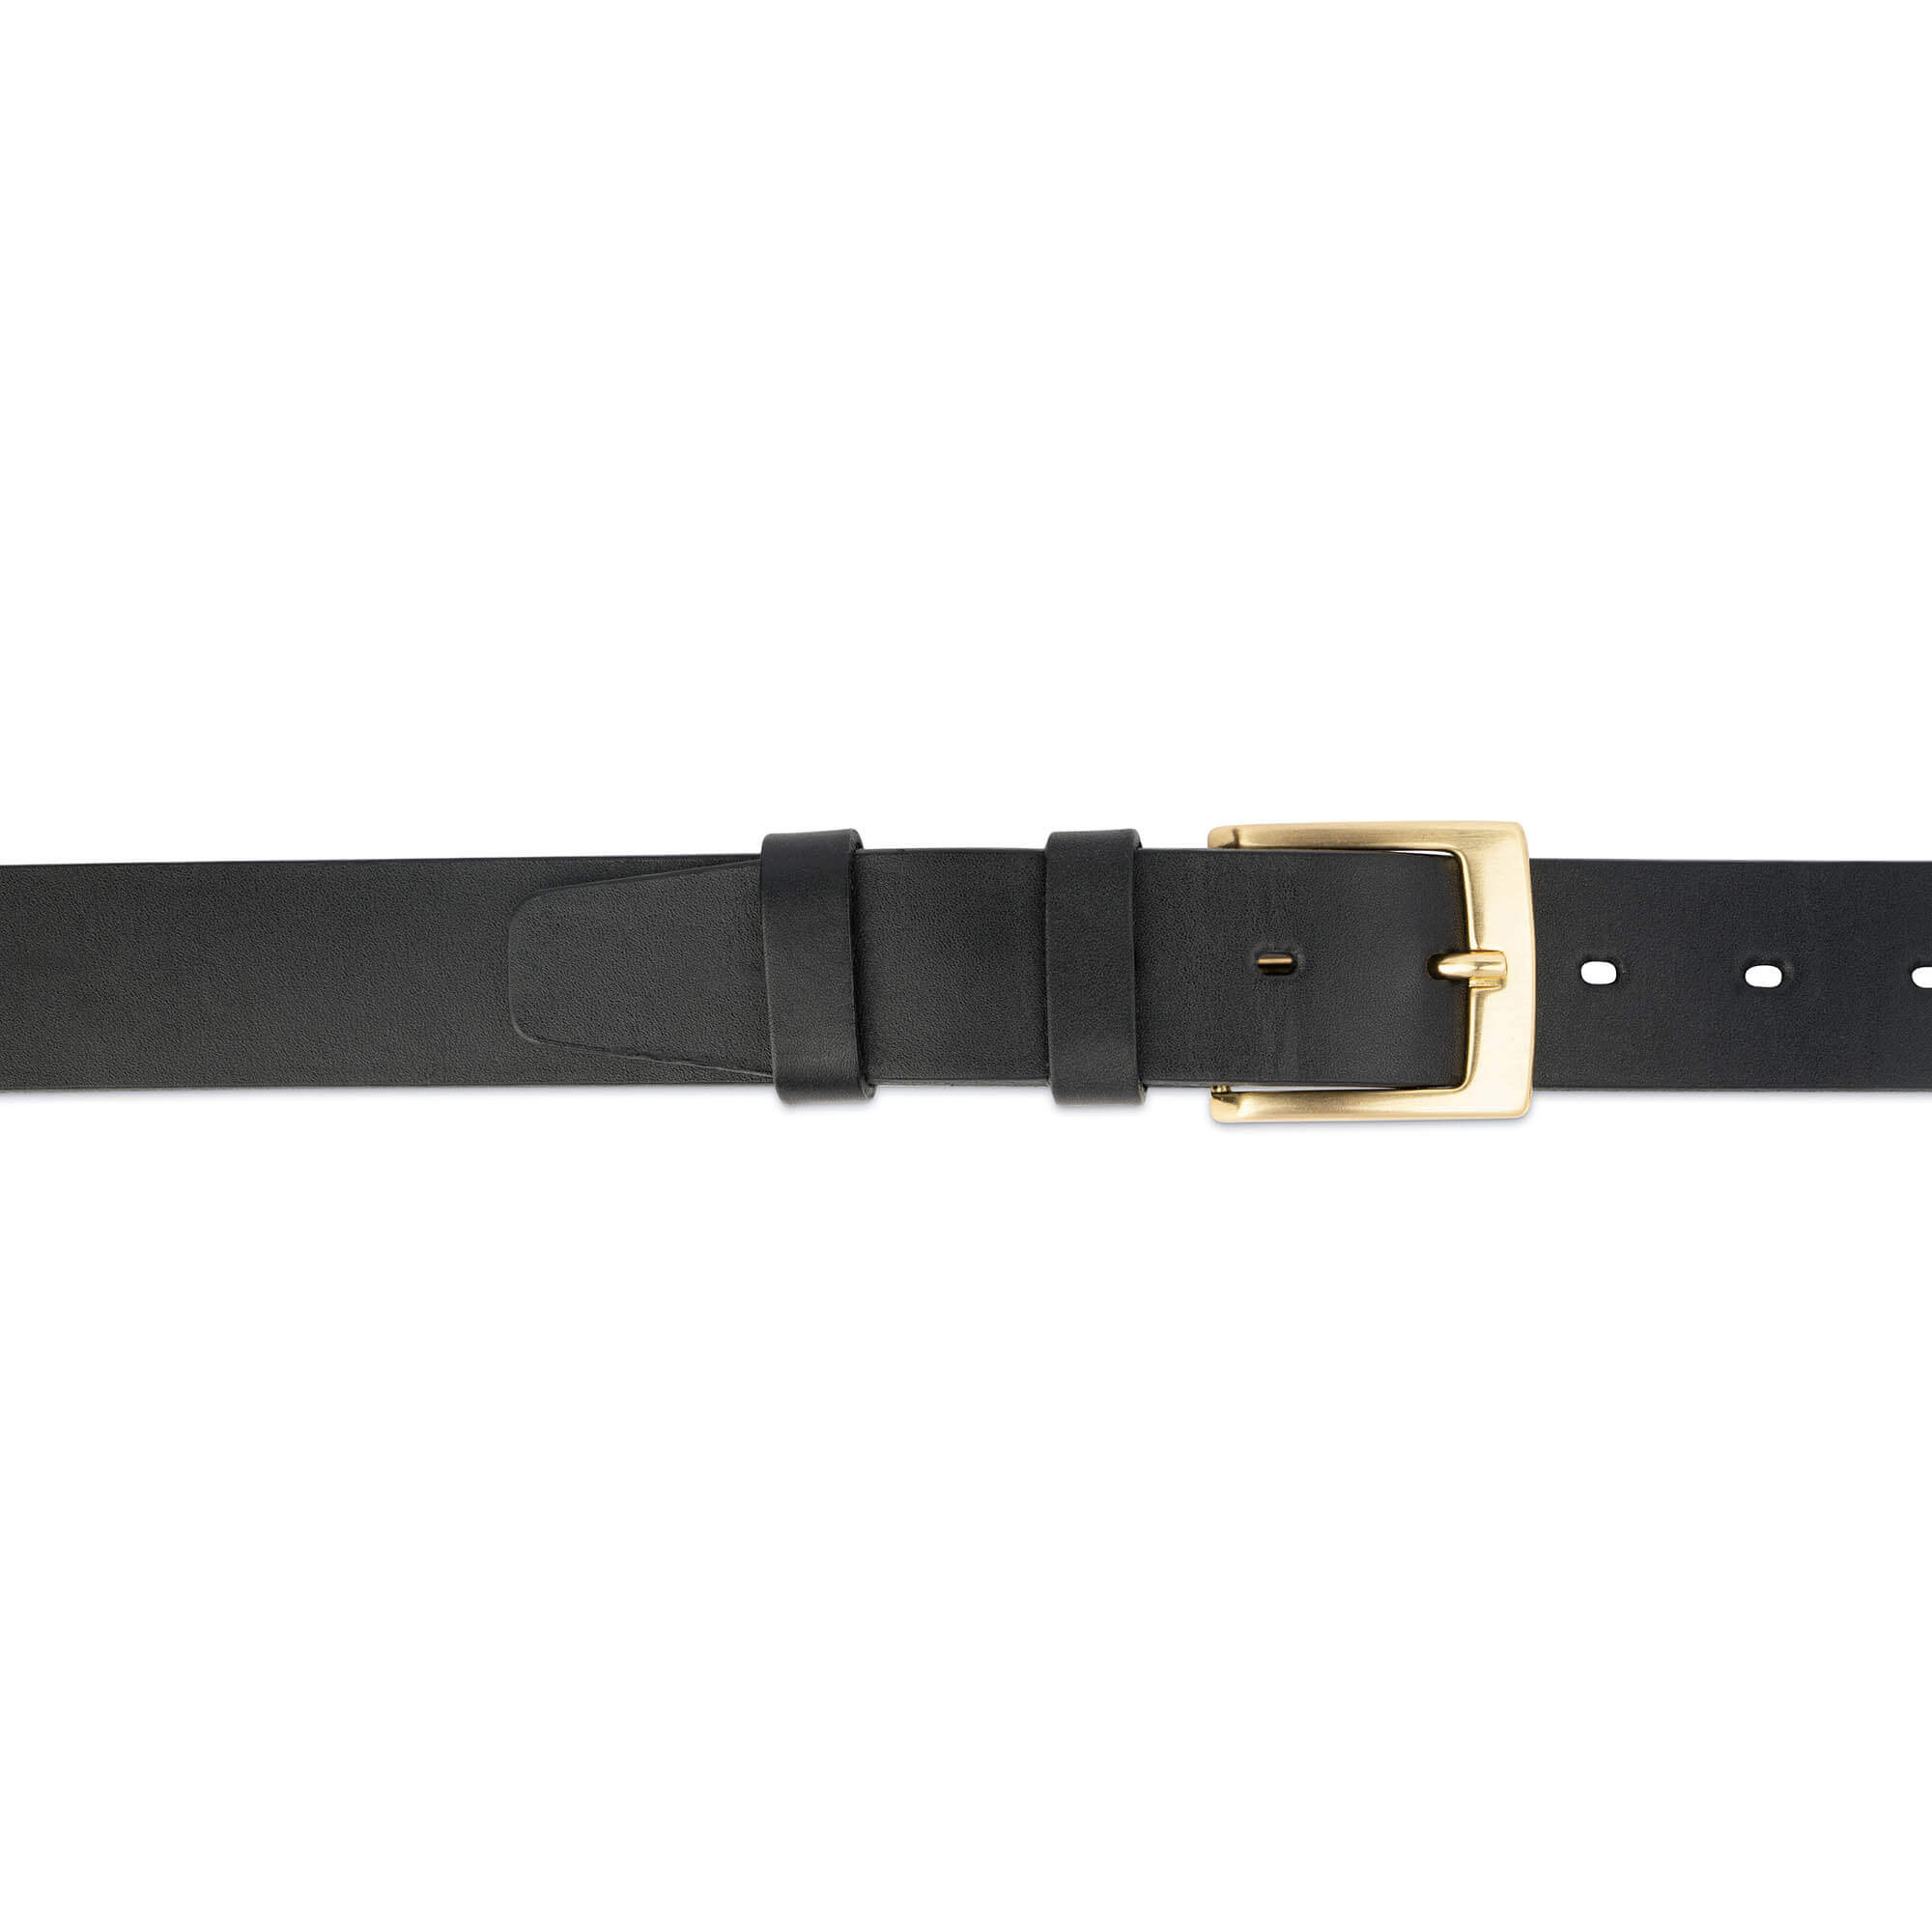 Buy Mens Black Leather Belt With Gold Buckle | LeatherBeltsOnline.com